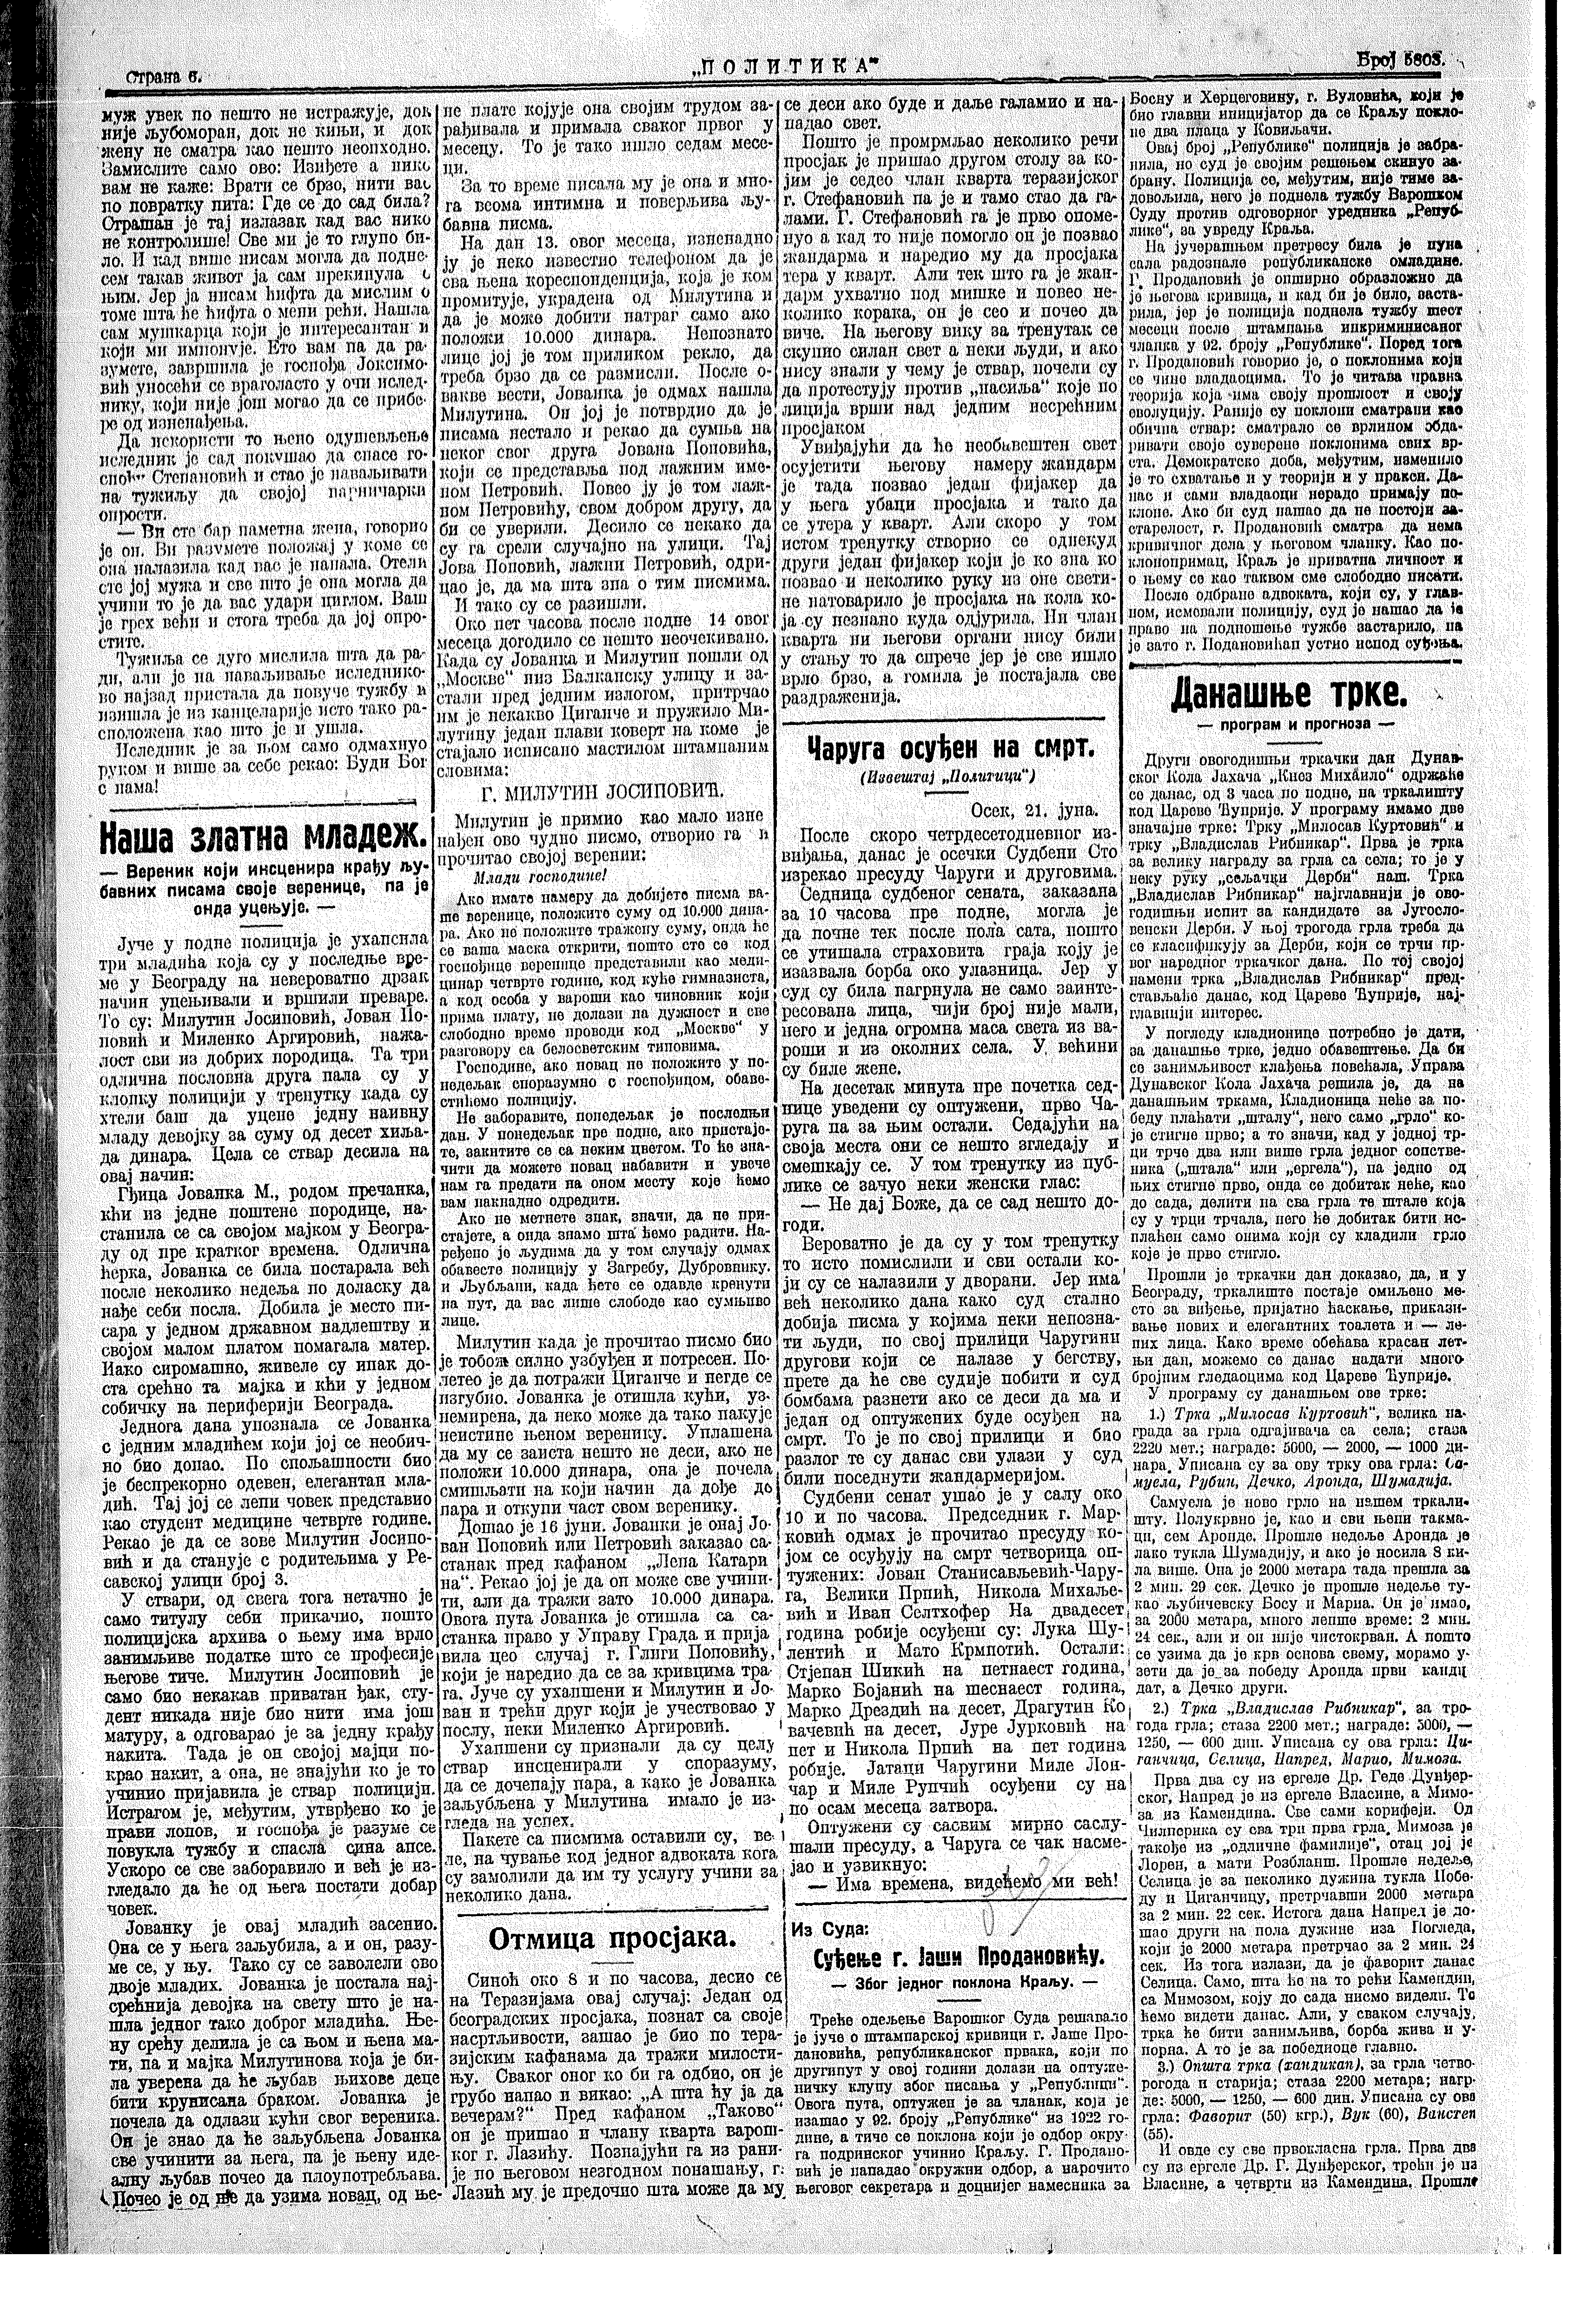 Čaruga osuđen na smrt, Politika, 22.06.1924.